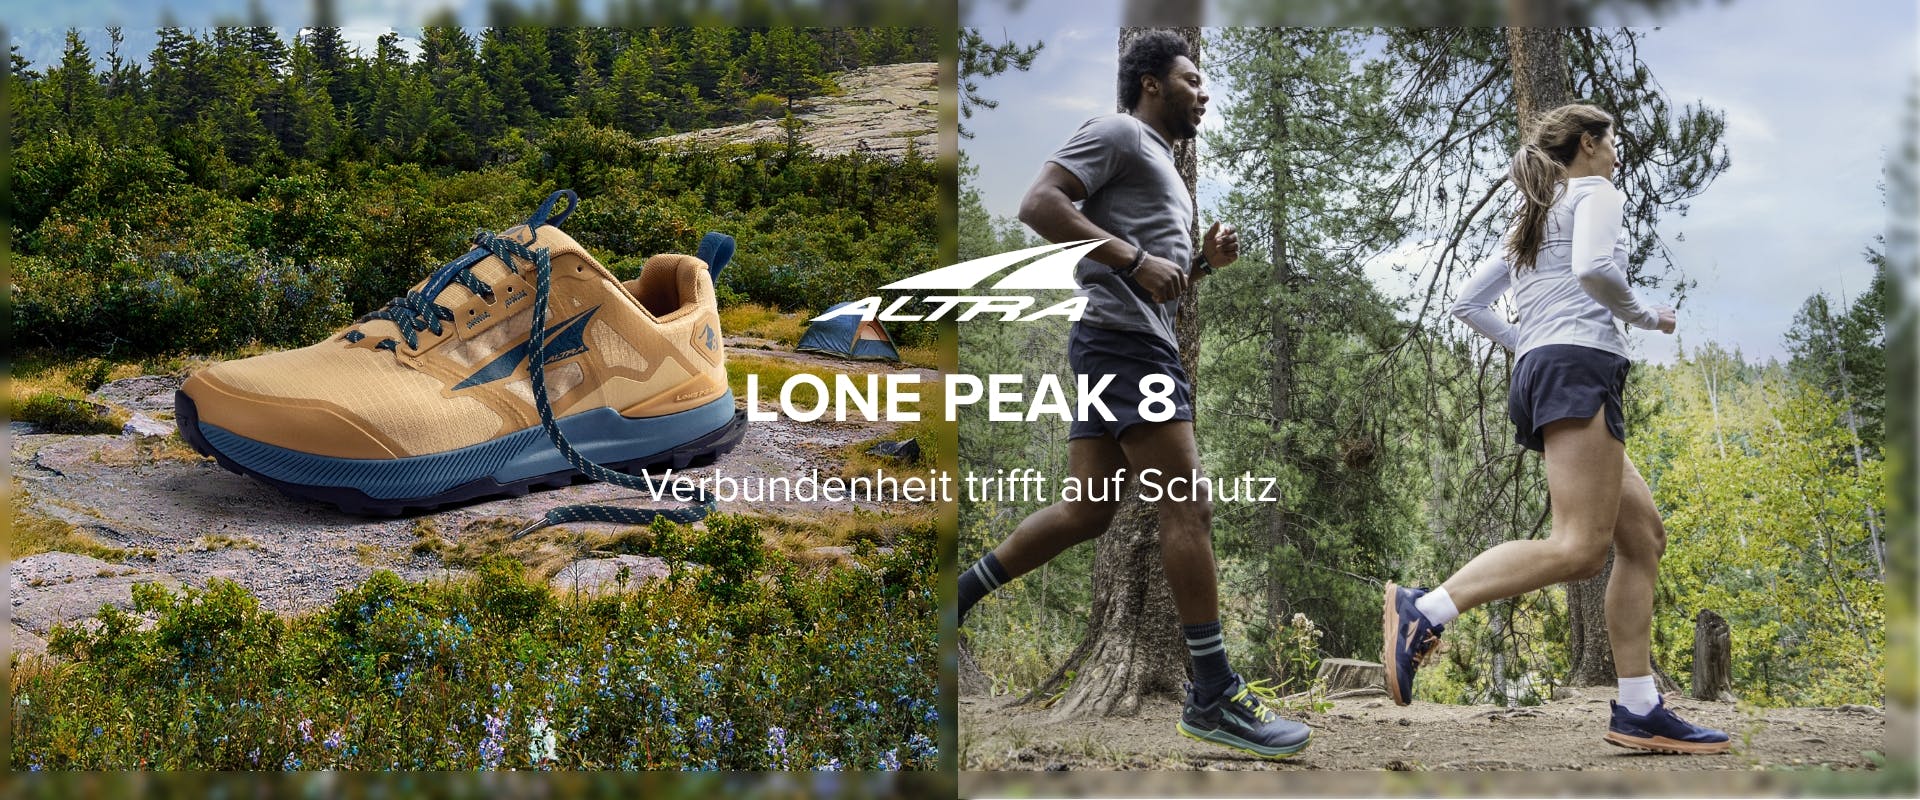 Lone Peak 8